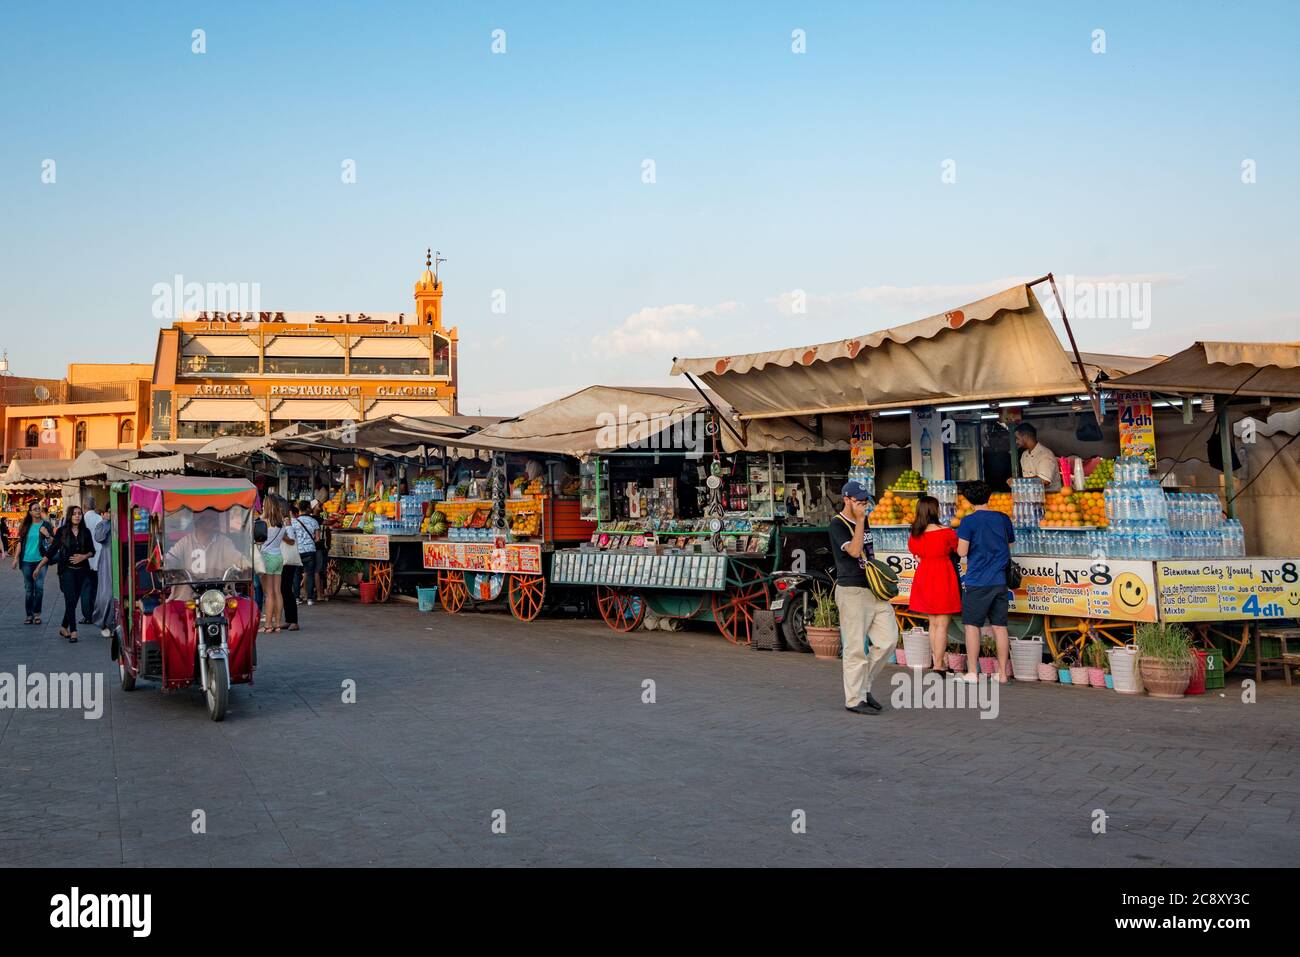 The Jemaa el Fna – main square – in Marrakesh, Morocco Stock Photo